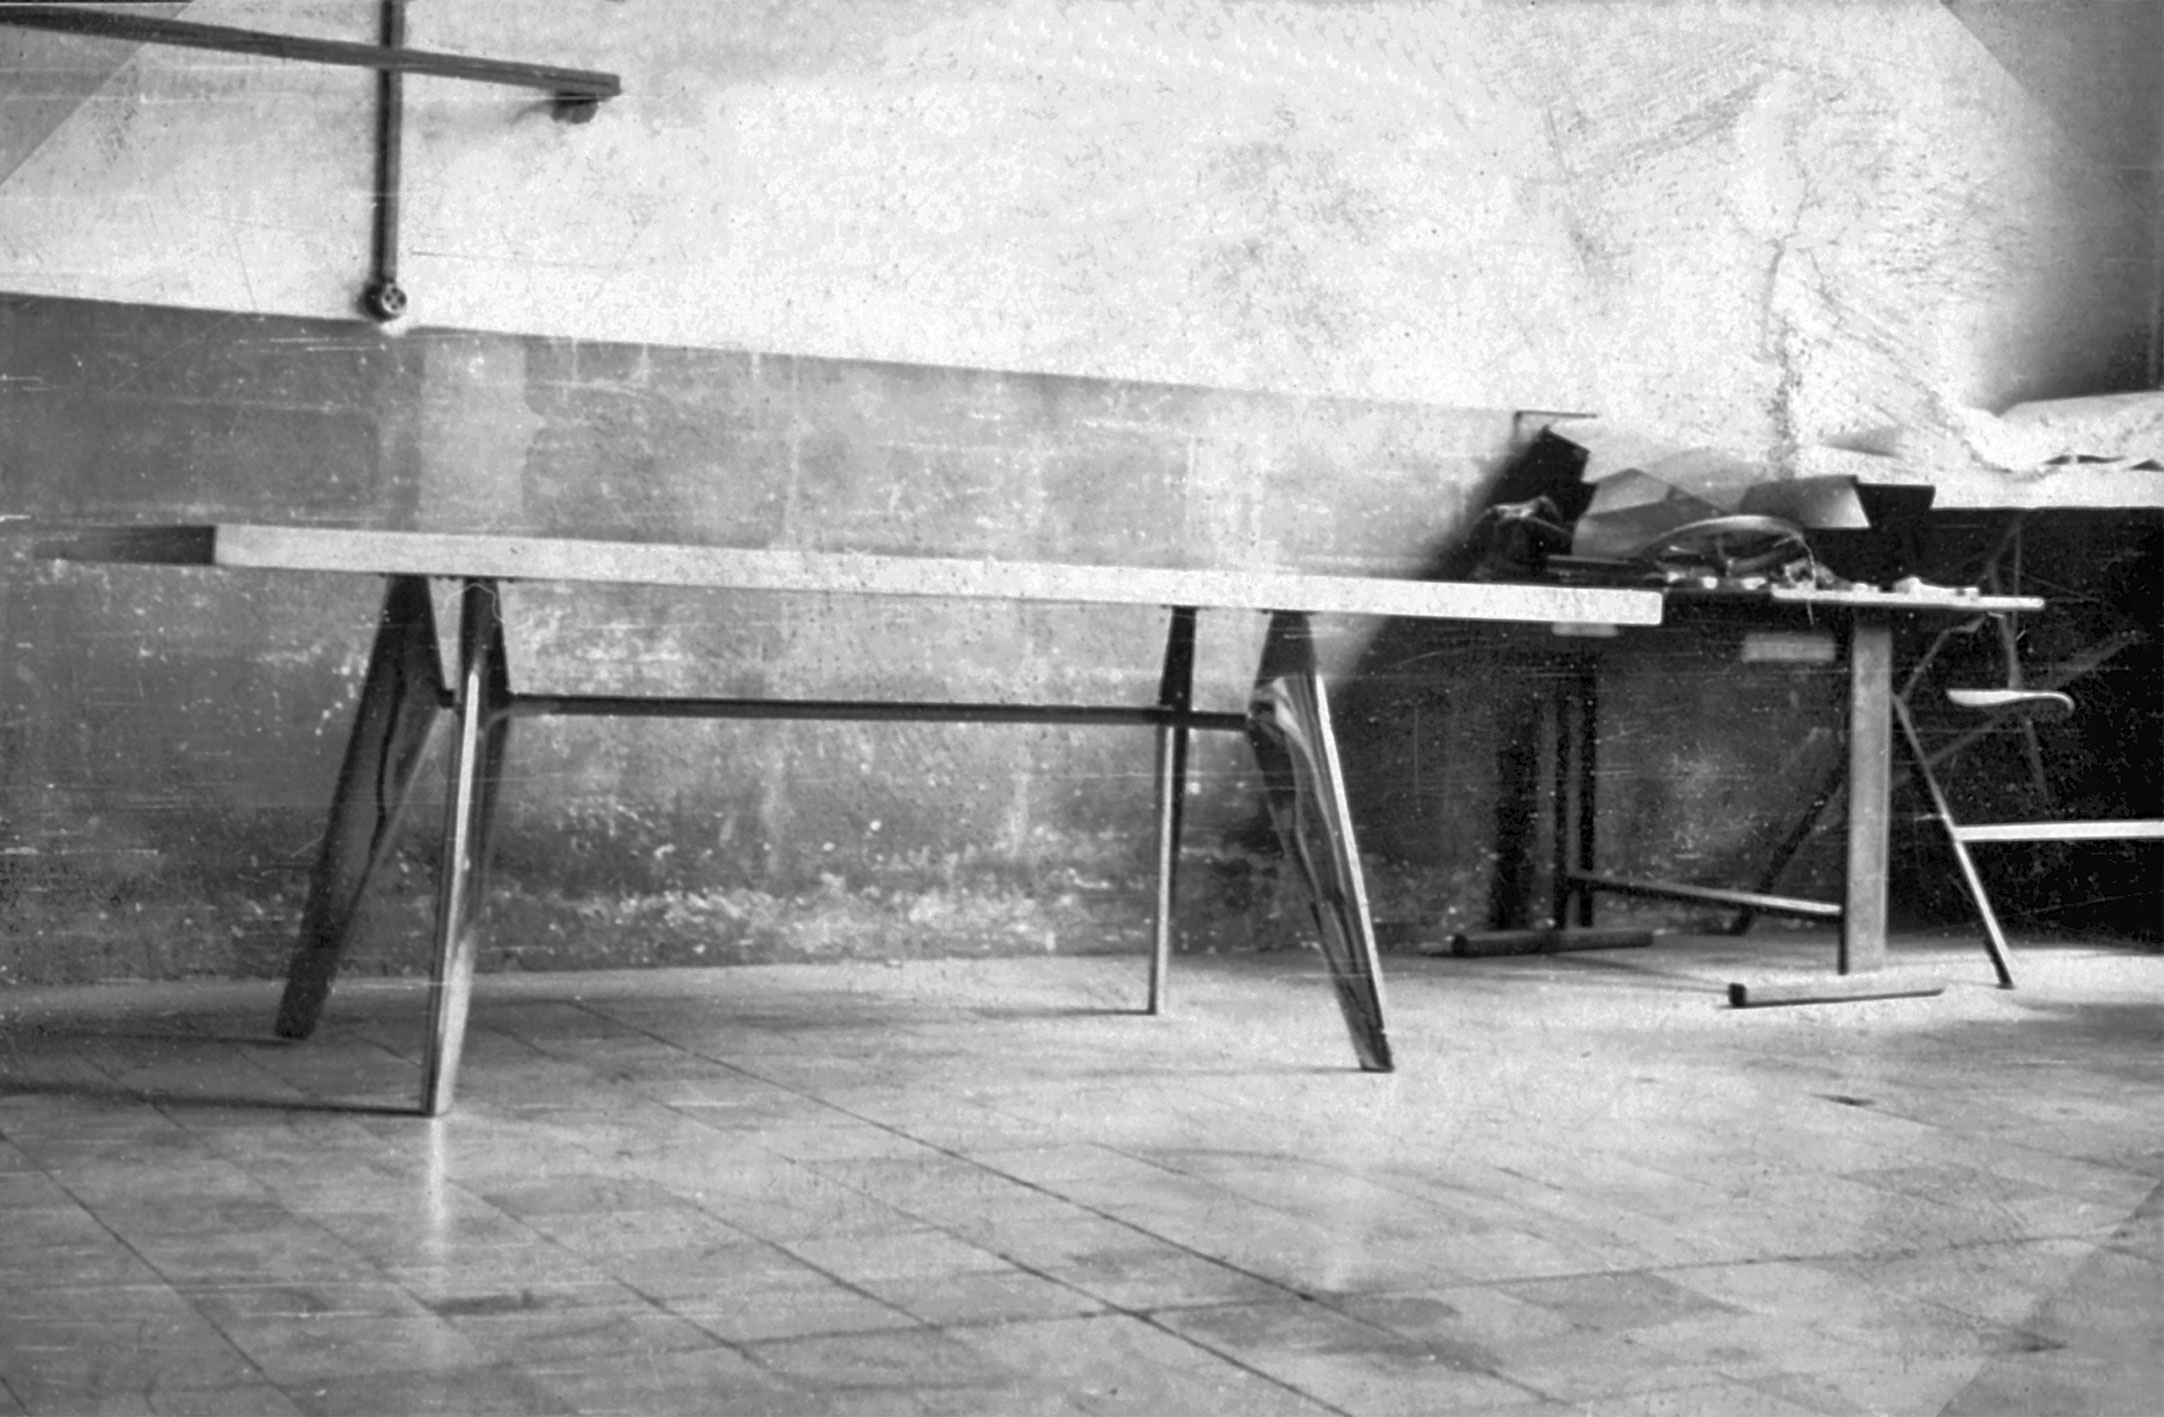 Table S.A.M. à piètement métallique non démontable. Prototype à l’atelier, c. 1951.